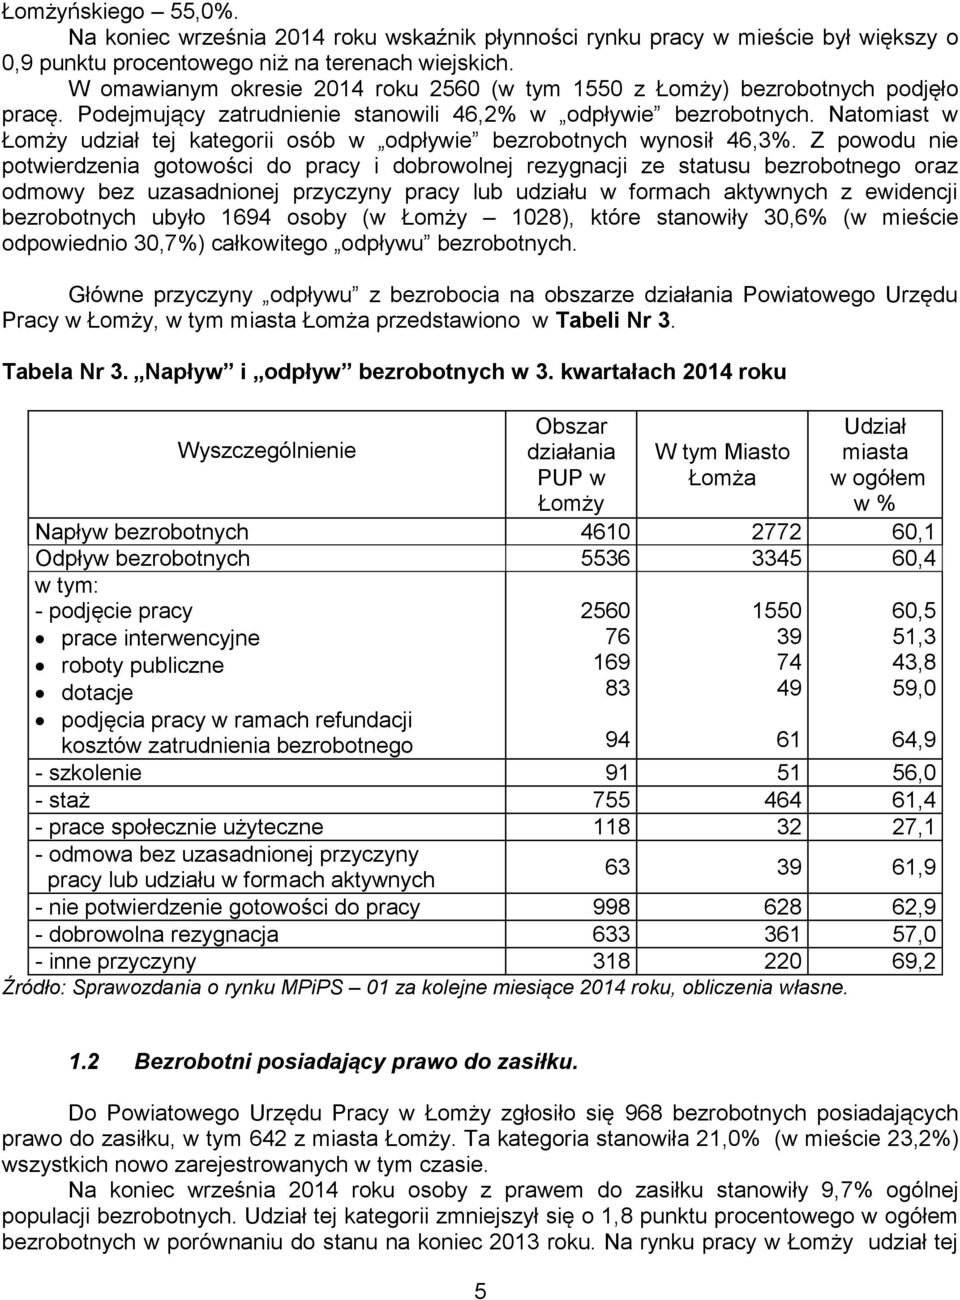 Natomiast w Łomży udział tej kategorii osób w odpływie bezrobotnych wynosił 46,3%.